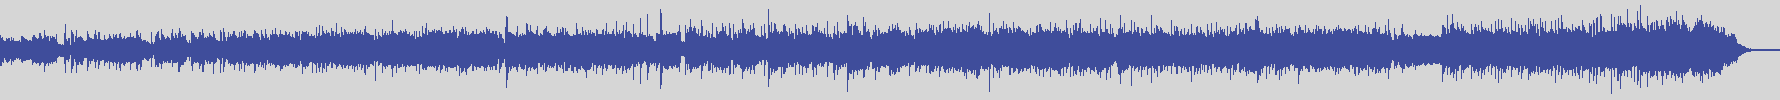 digiphonic_records [DPR013] Little Tony - Il Tempo Di Imparare a Soffrire [Original Mix] audio wave form